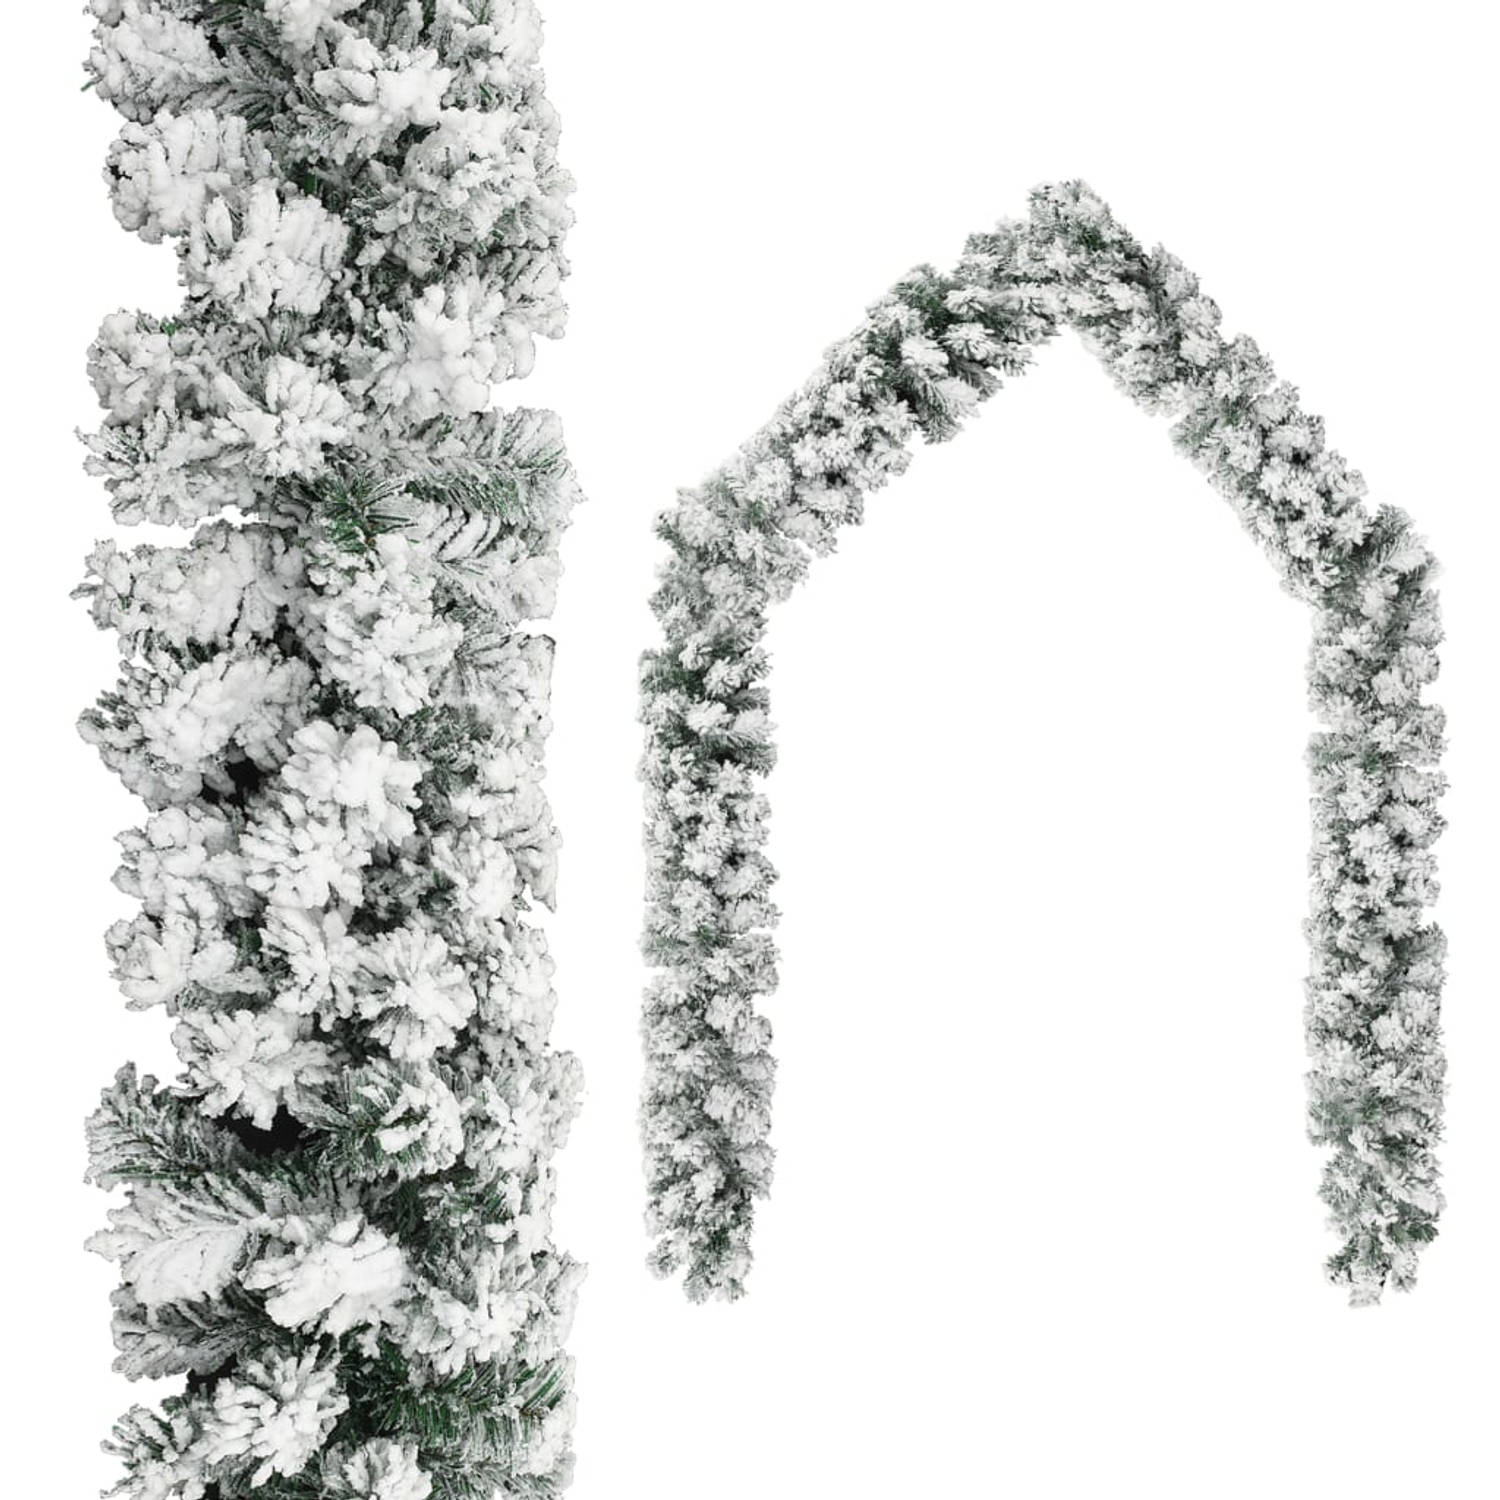 The Living Store Kerstslinger - Guirlande PVC met witte sneeuwvlokken - 5m - LED-verlichting - Groen - Glanzend roségoud - mat roségoud en glitter roségoud kerstballen - 21x4cm pie